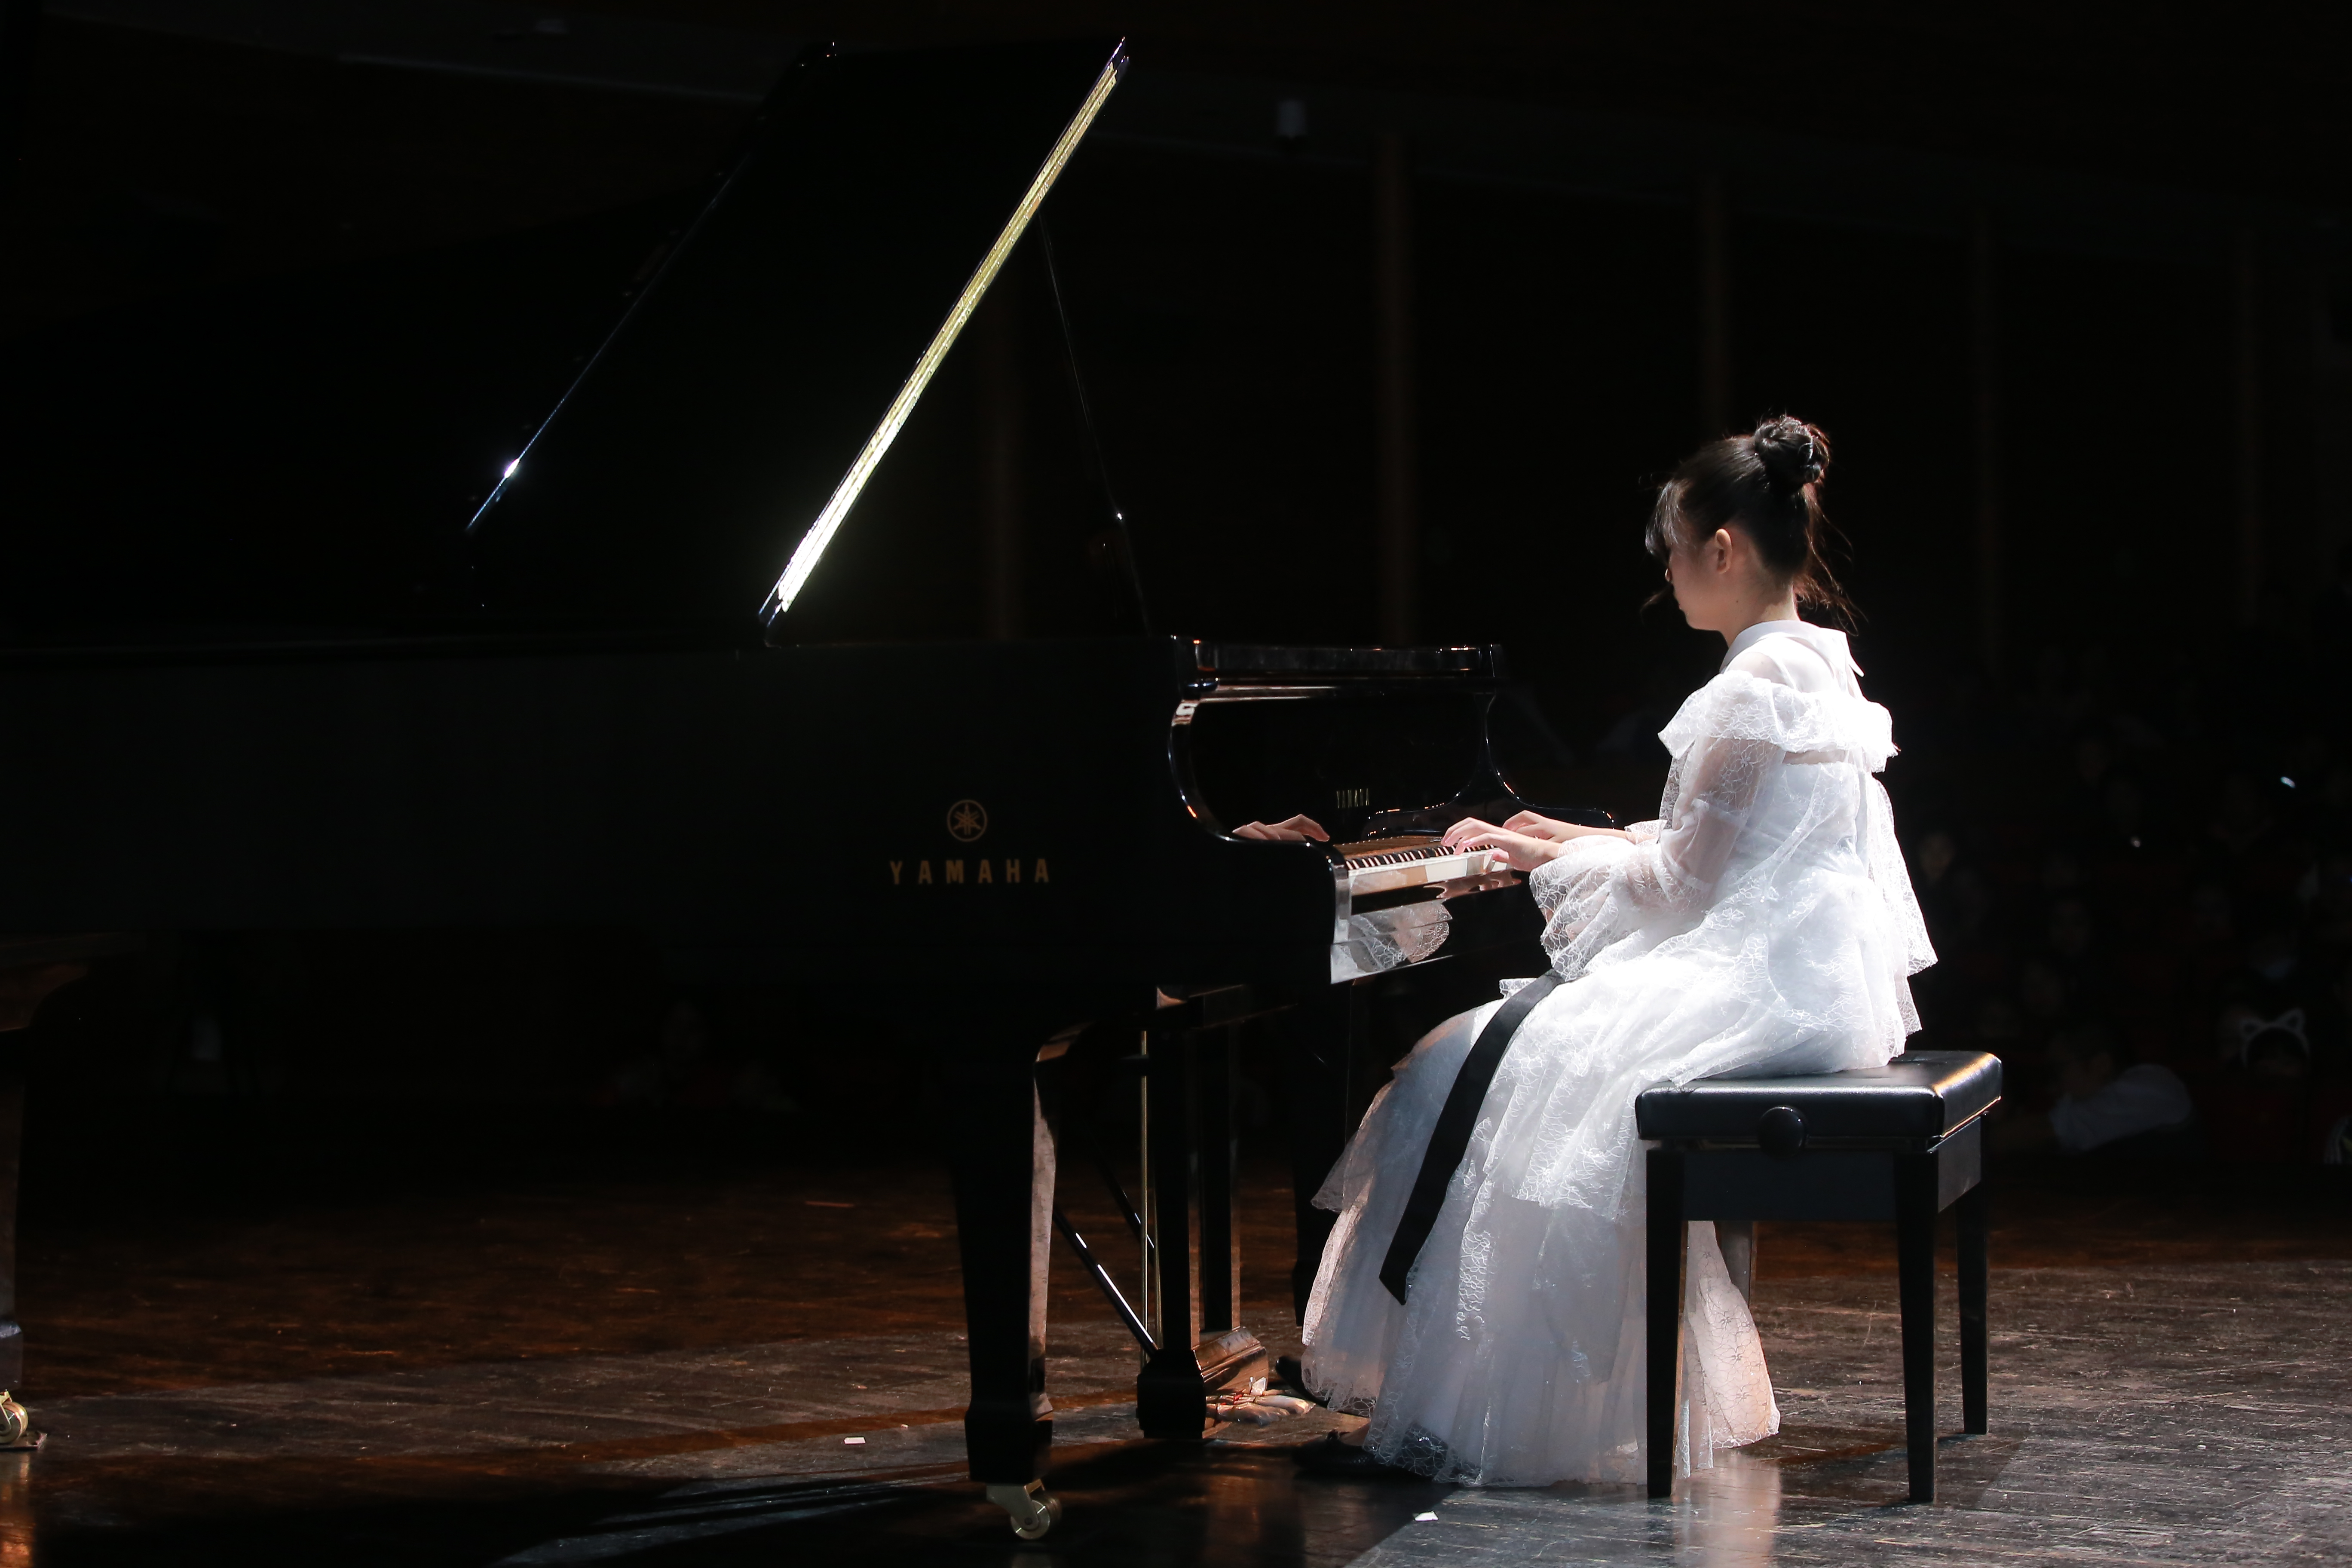 持之以恒,扶摇而上,深圳11岁女孩举办钢琴独奏音乐会